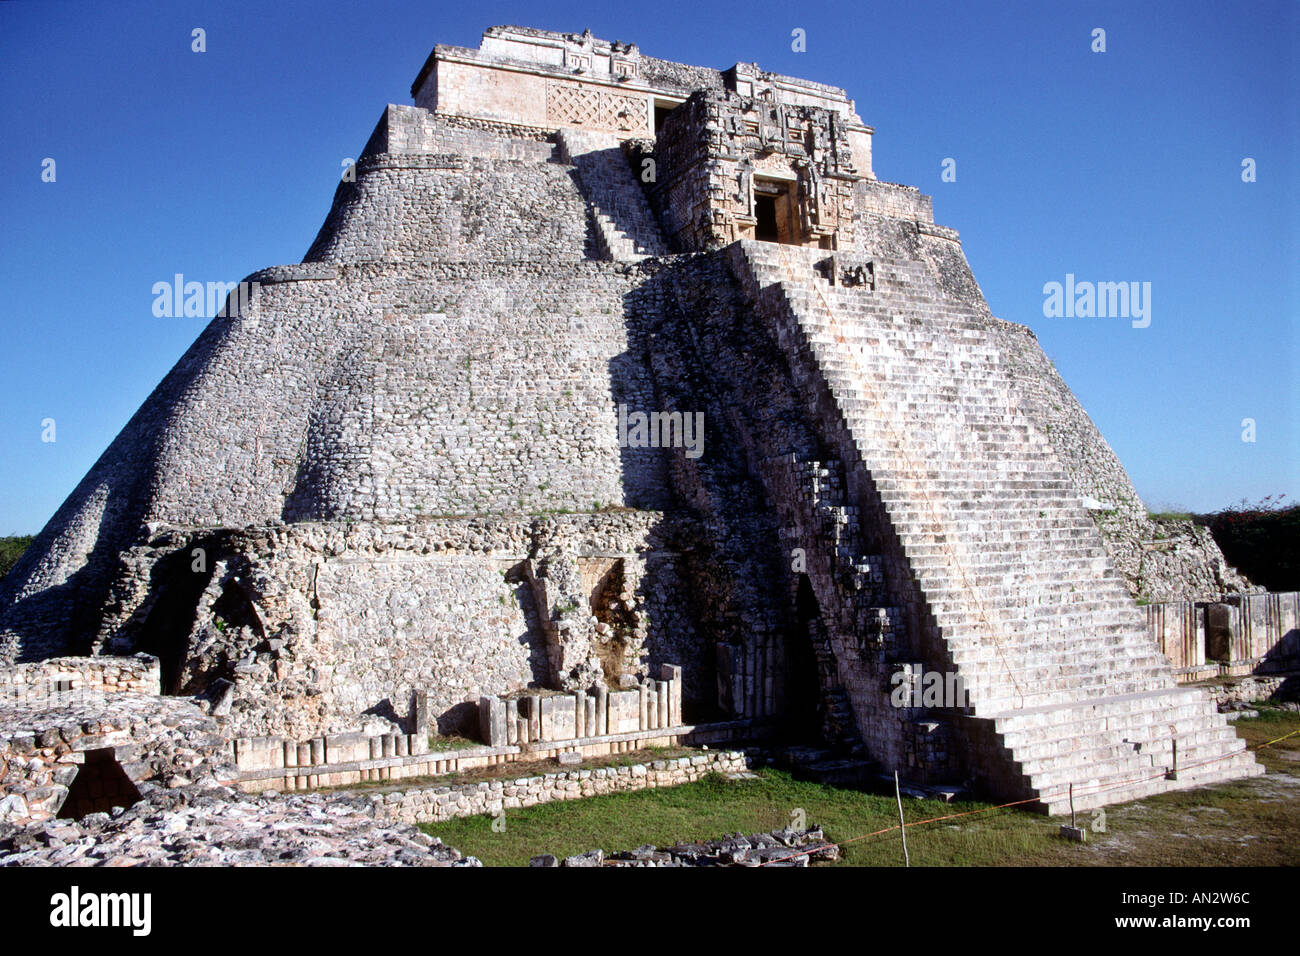 La pyramide du magicien, une partie de l'Uxmal maya au Mexique" l'état du Yucatan. Banque D'Images